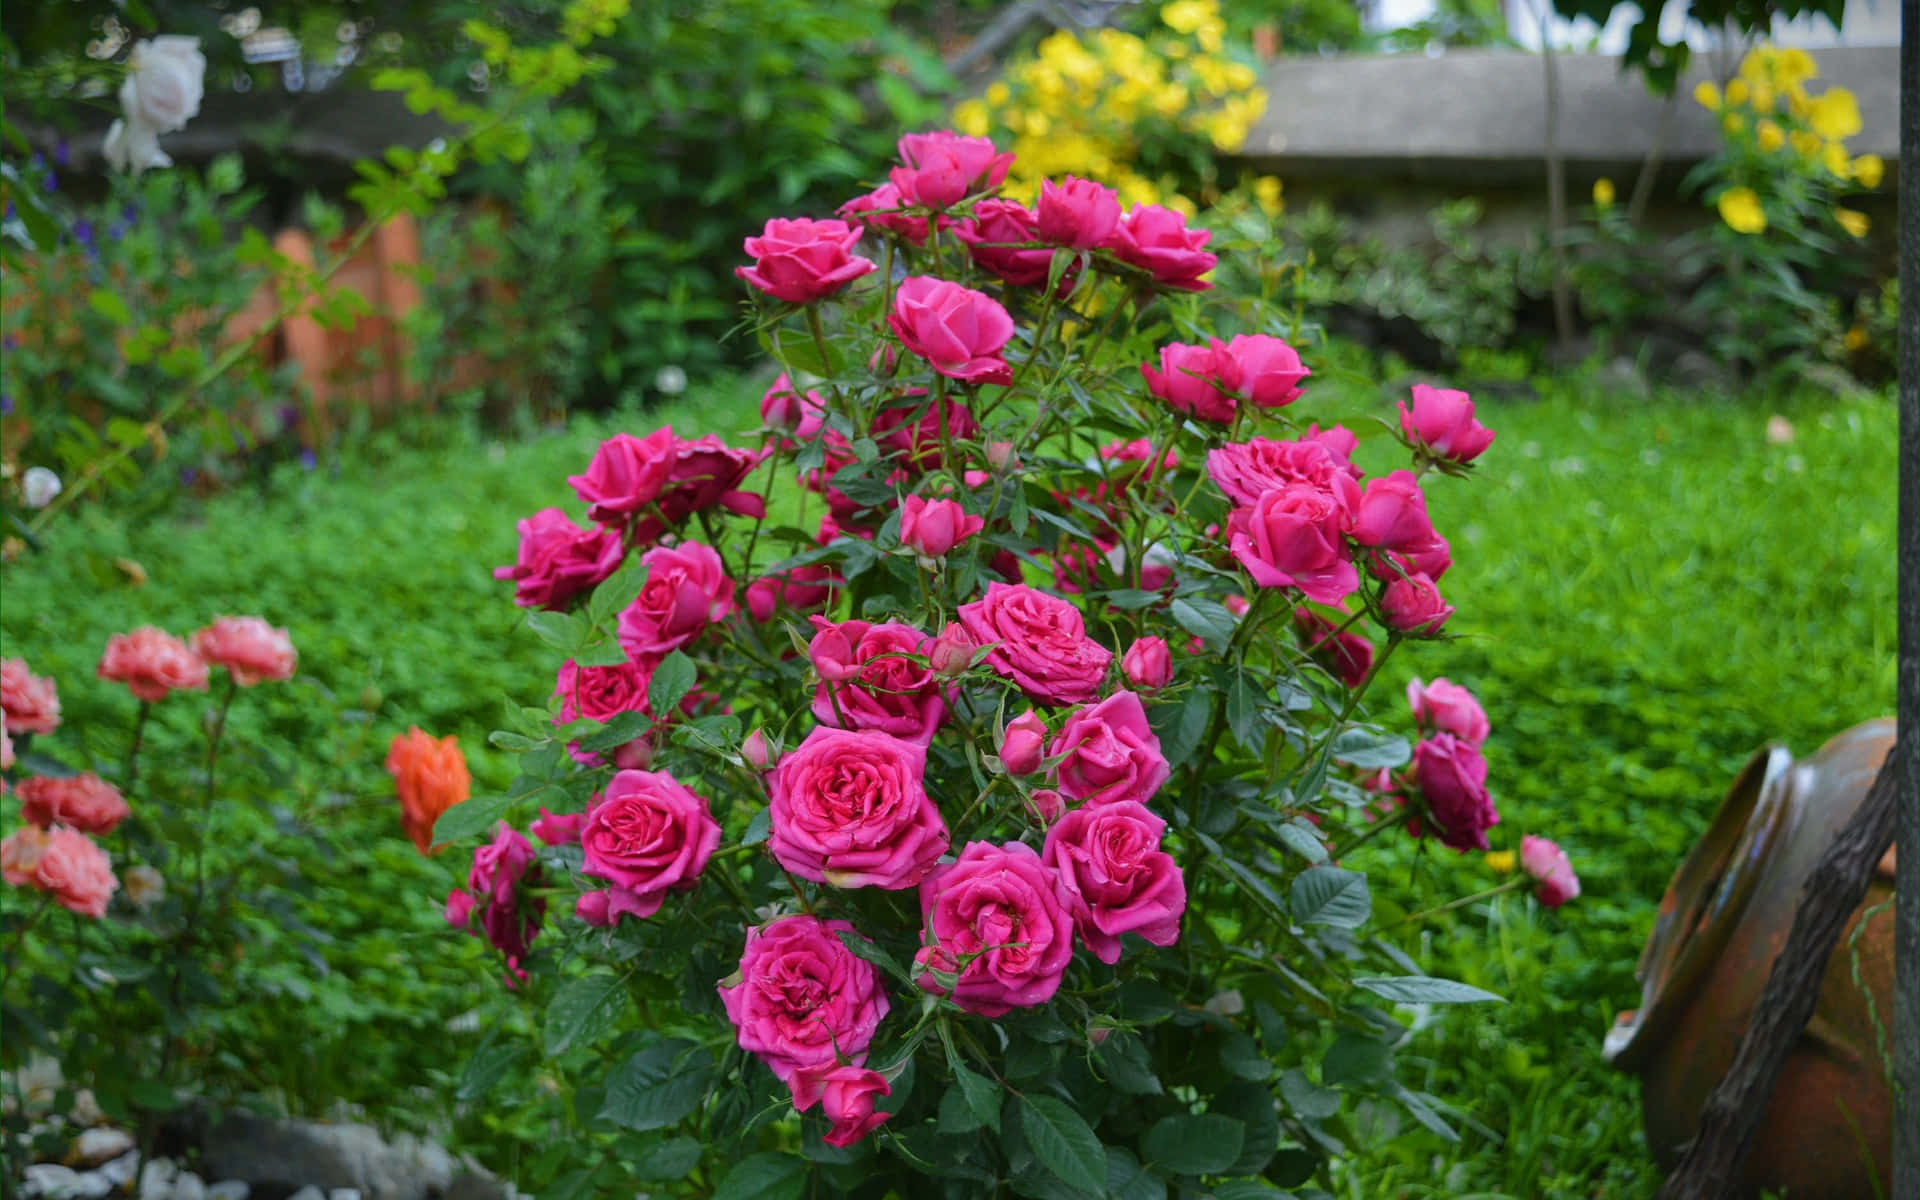 Rosade Jardín Rosas Rosadas En Un Arbusto En El Césped Imagen